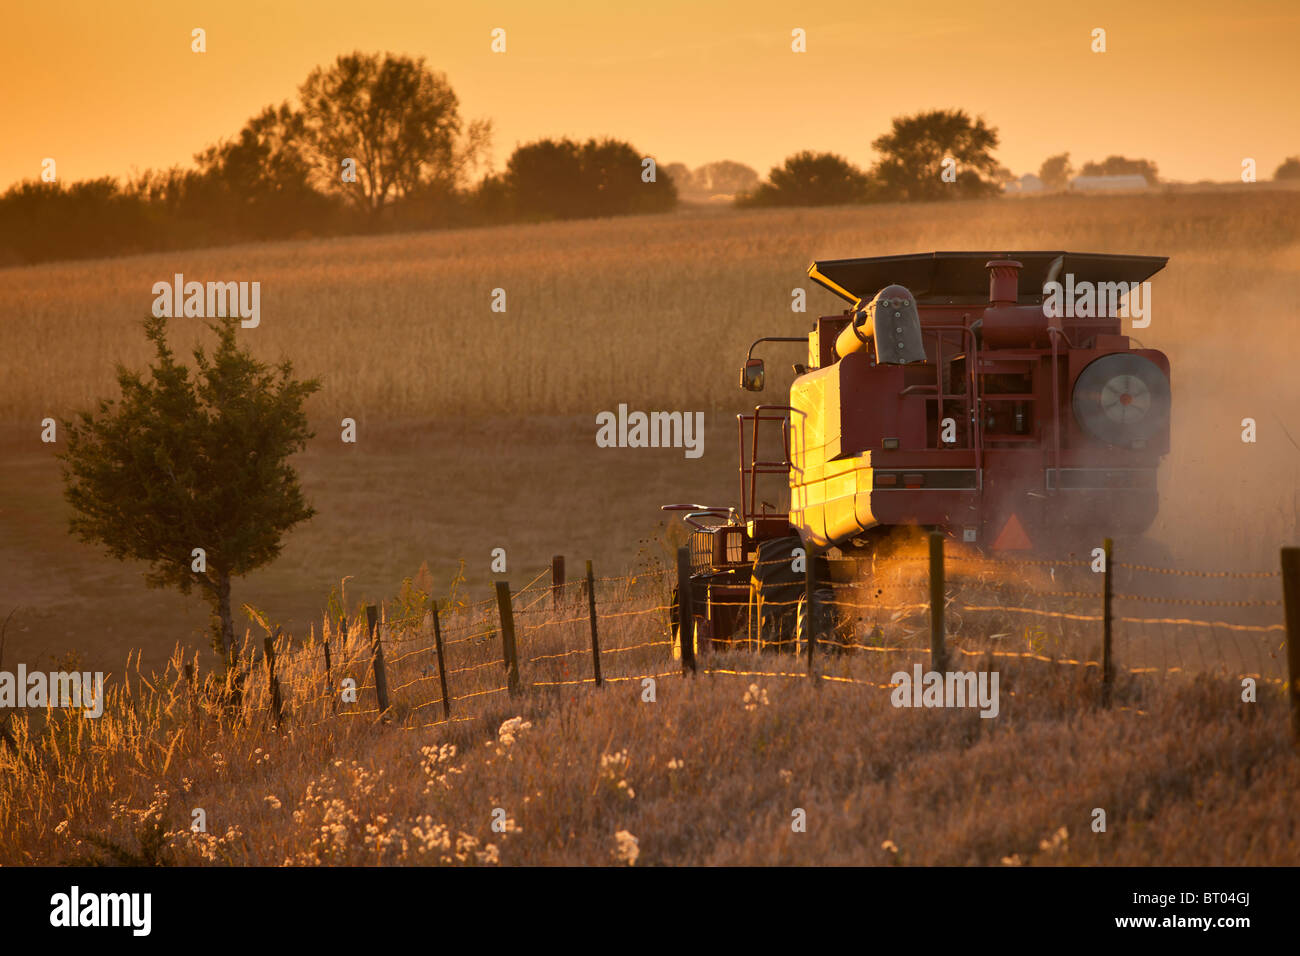 Une moissonneuse-batteuse dans un champ de maïs au coucher du soleil Banque D'Images